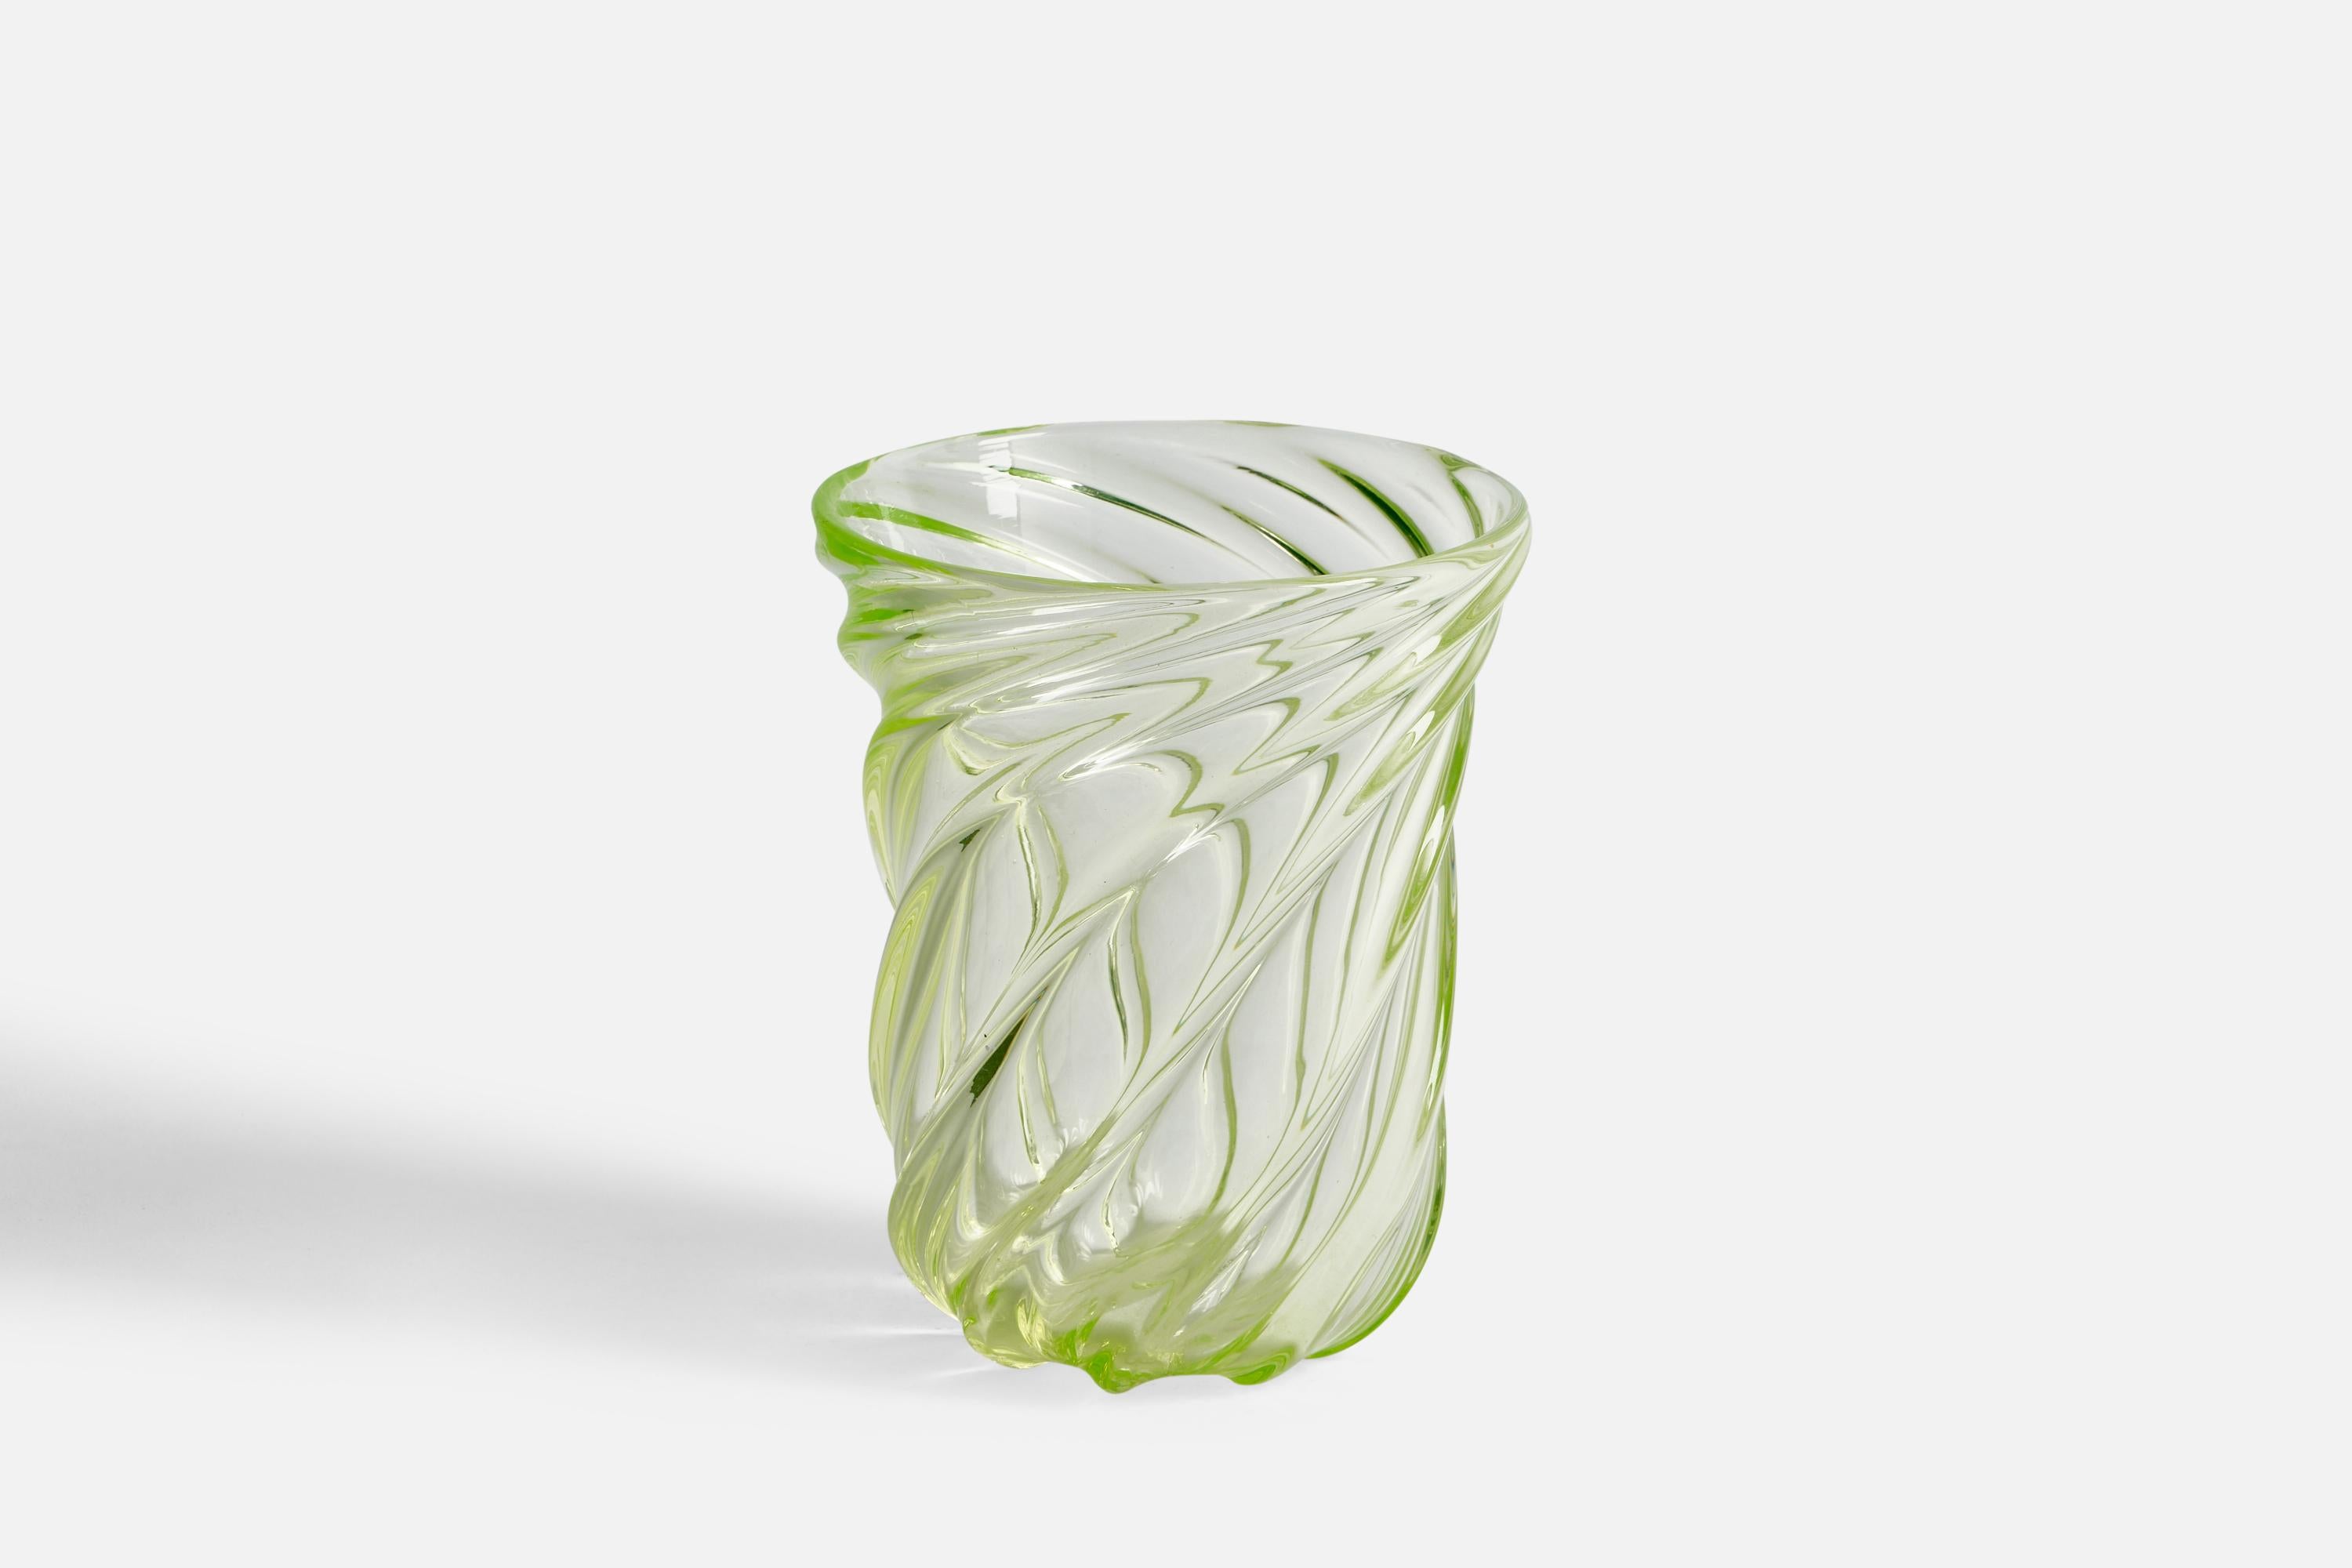 Vase en verre soufflé de couleur verte par Reijmyre Glasbruk, Suède, vers les années 1940.